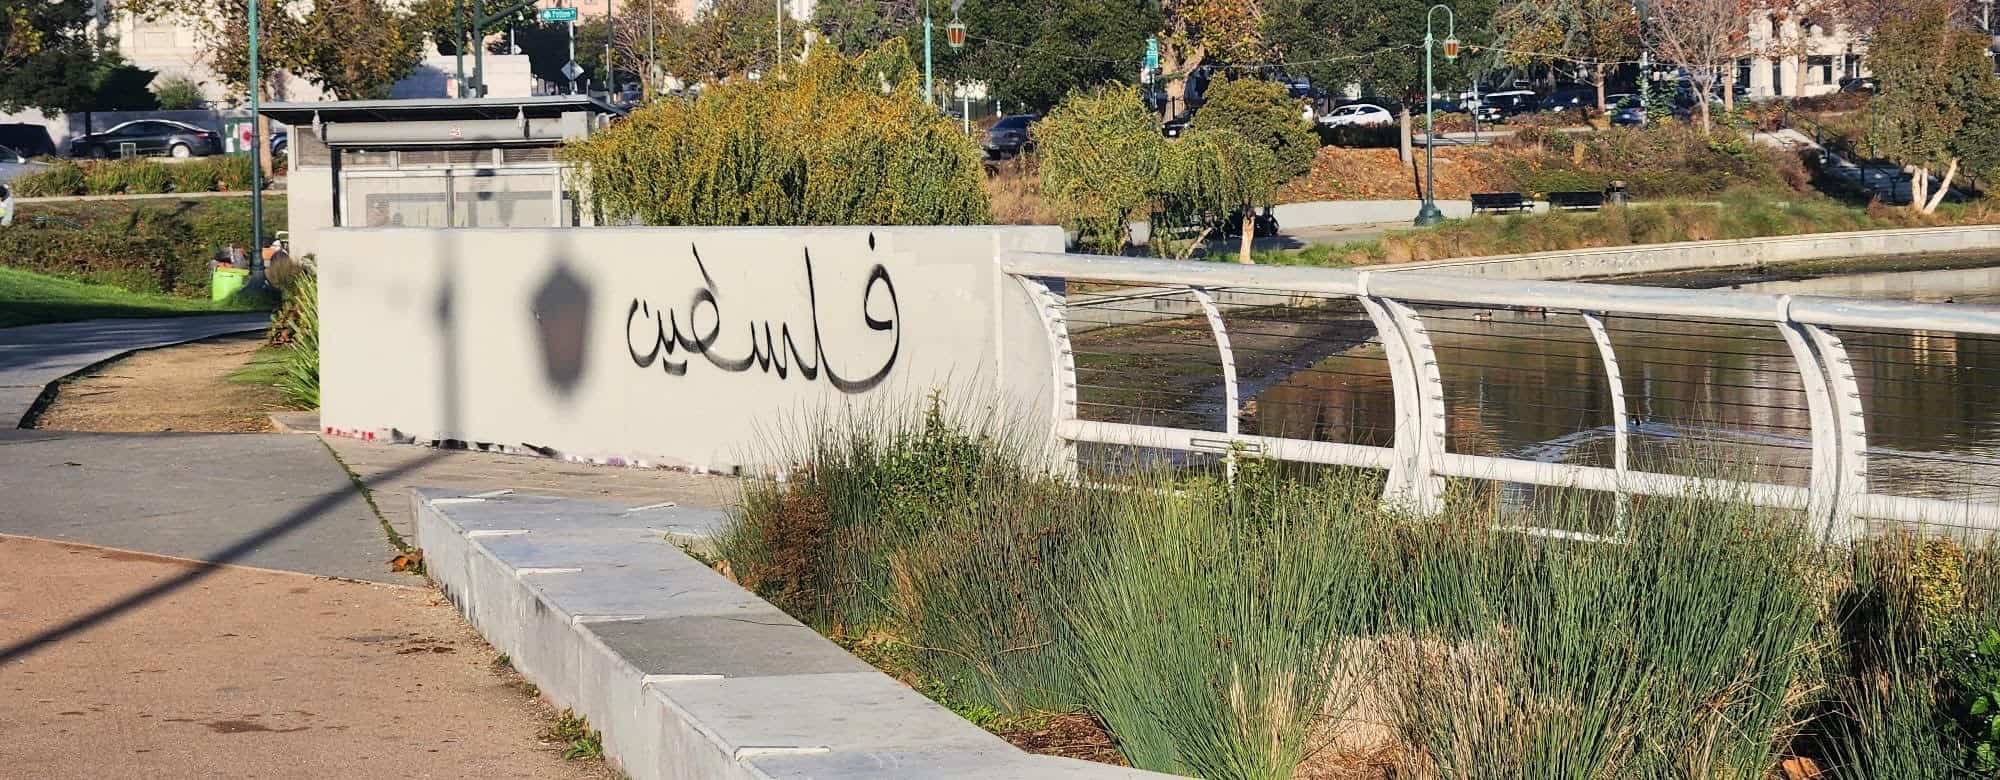 Menorah Vandalism in Oakland, California